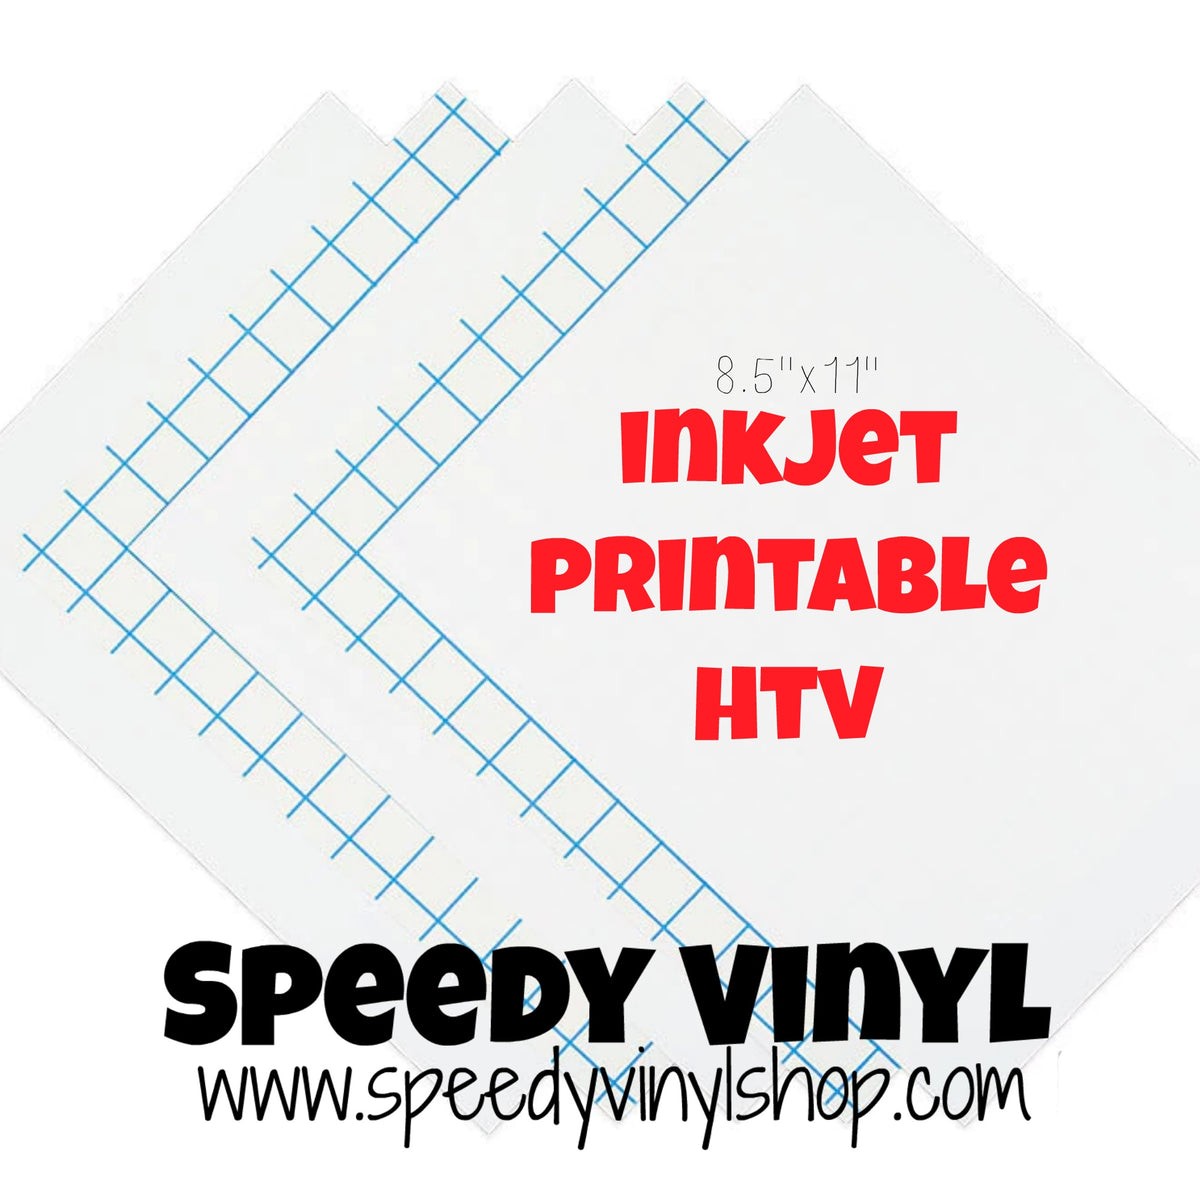 Inkjet Printable HTV 8.5